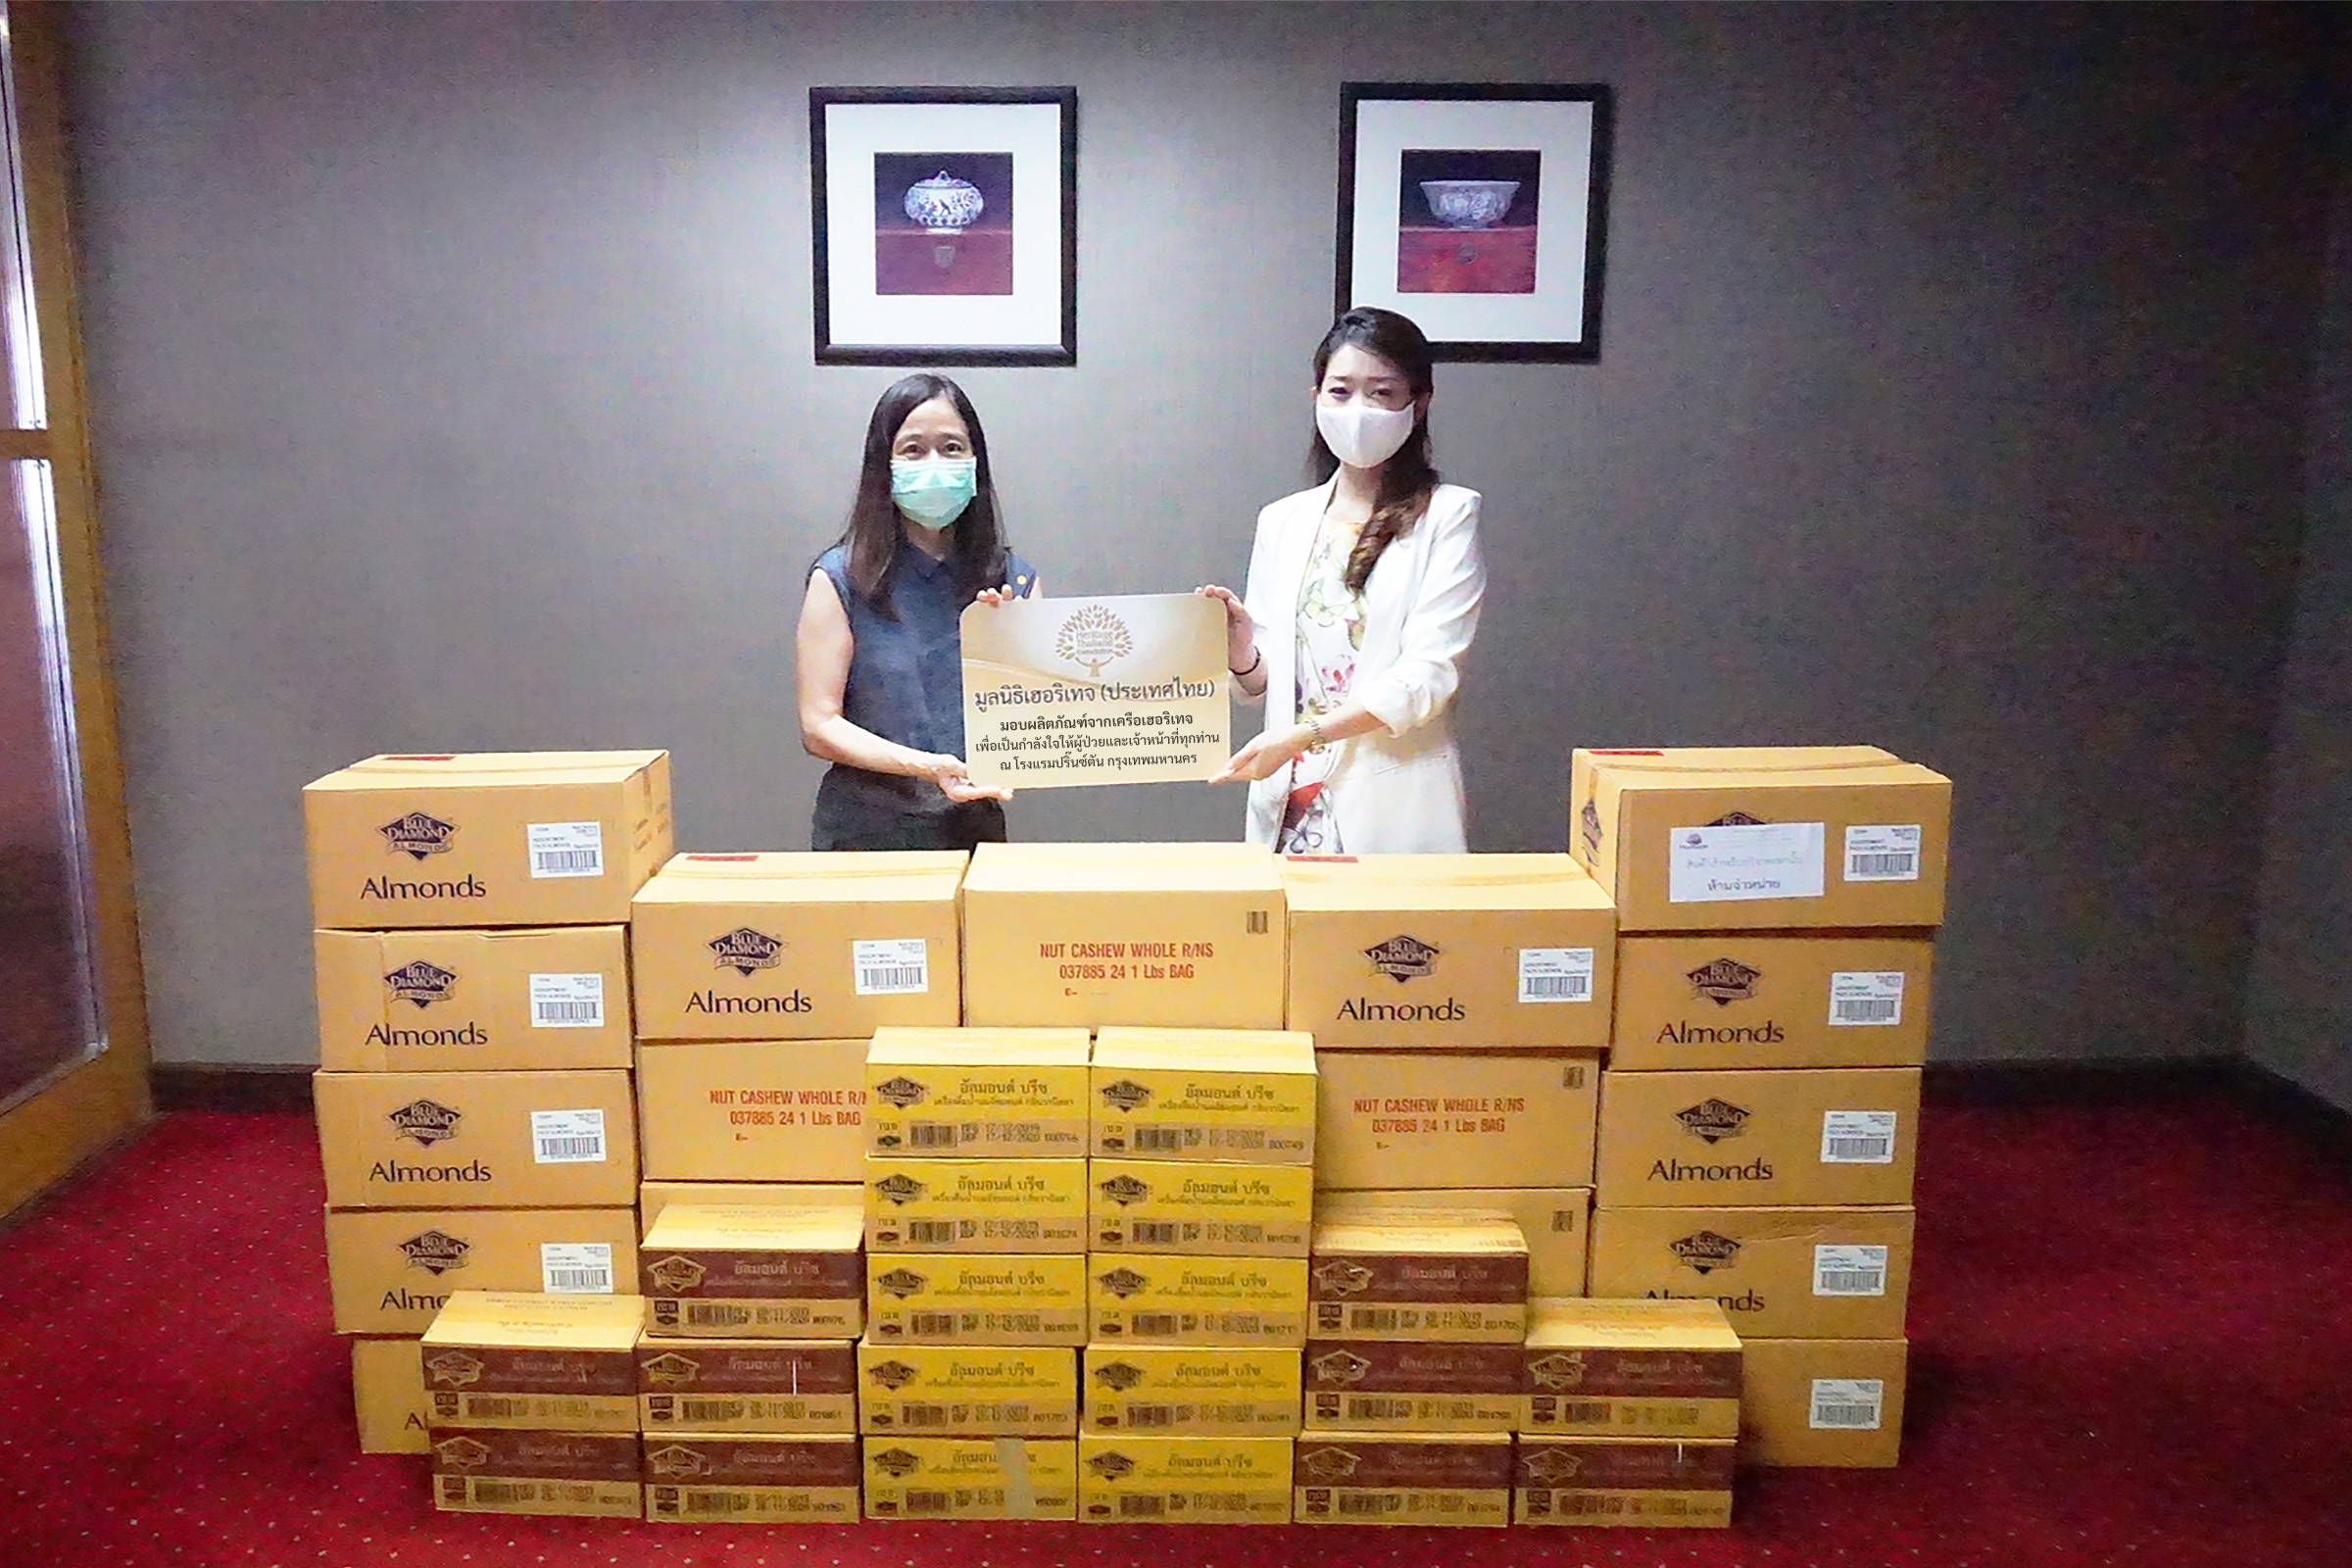 ภาพข่าว: มูลนิธิเฮอริเทจประเทศไทย ส่งมอบผลิตภัณฑ์ในเครือเฮอริเทจ เพื่อช่วยเหลือผู้ป่วย บุคลากรทางการแพทย์ และผู้รับผลกระทบจากโควิด